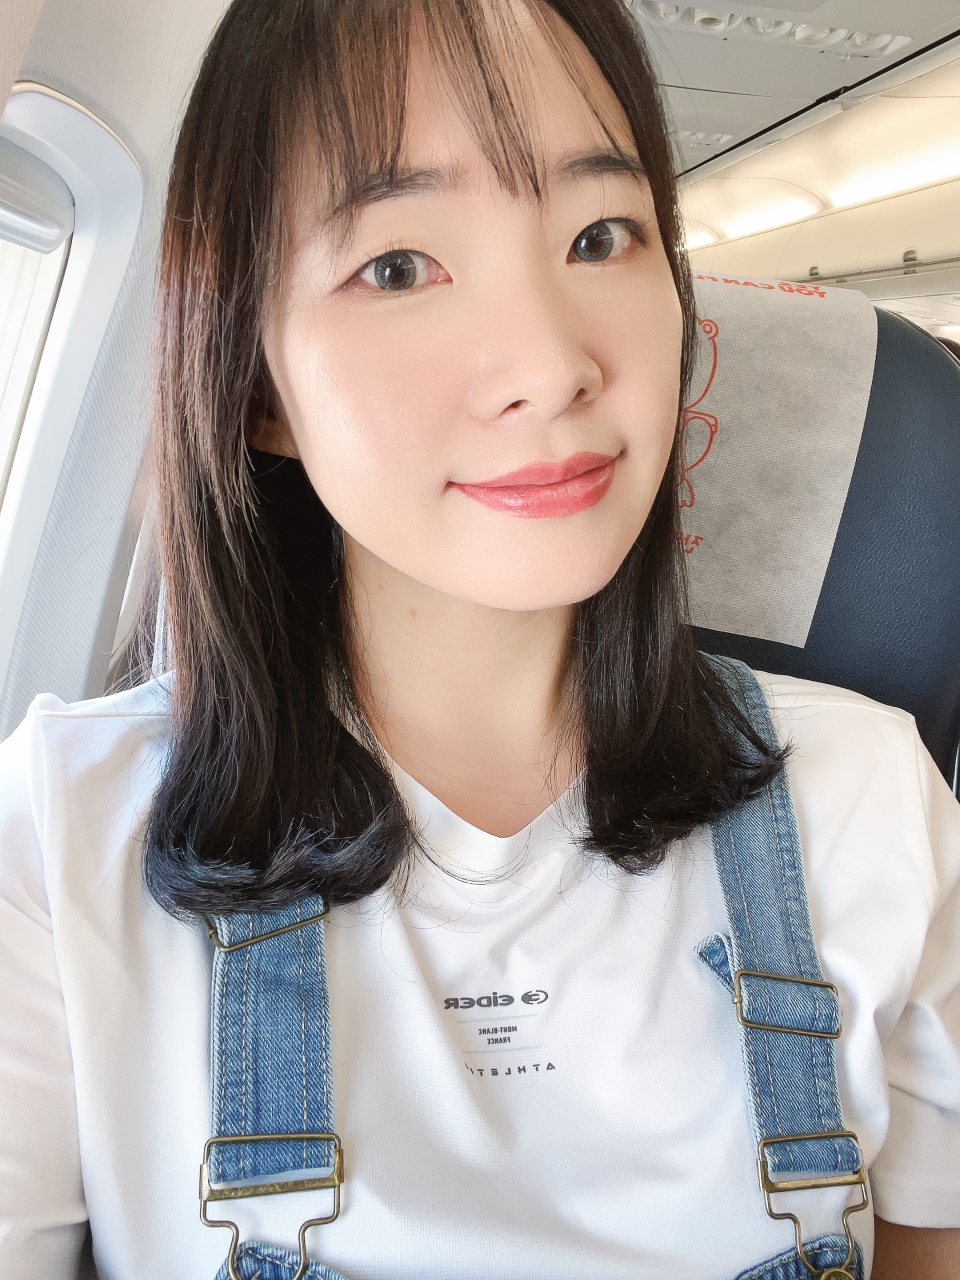 일본 항공권 특가 비행기표 예약 + 일본 입국 심사 후 나고야 여행